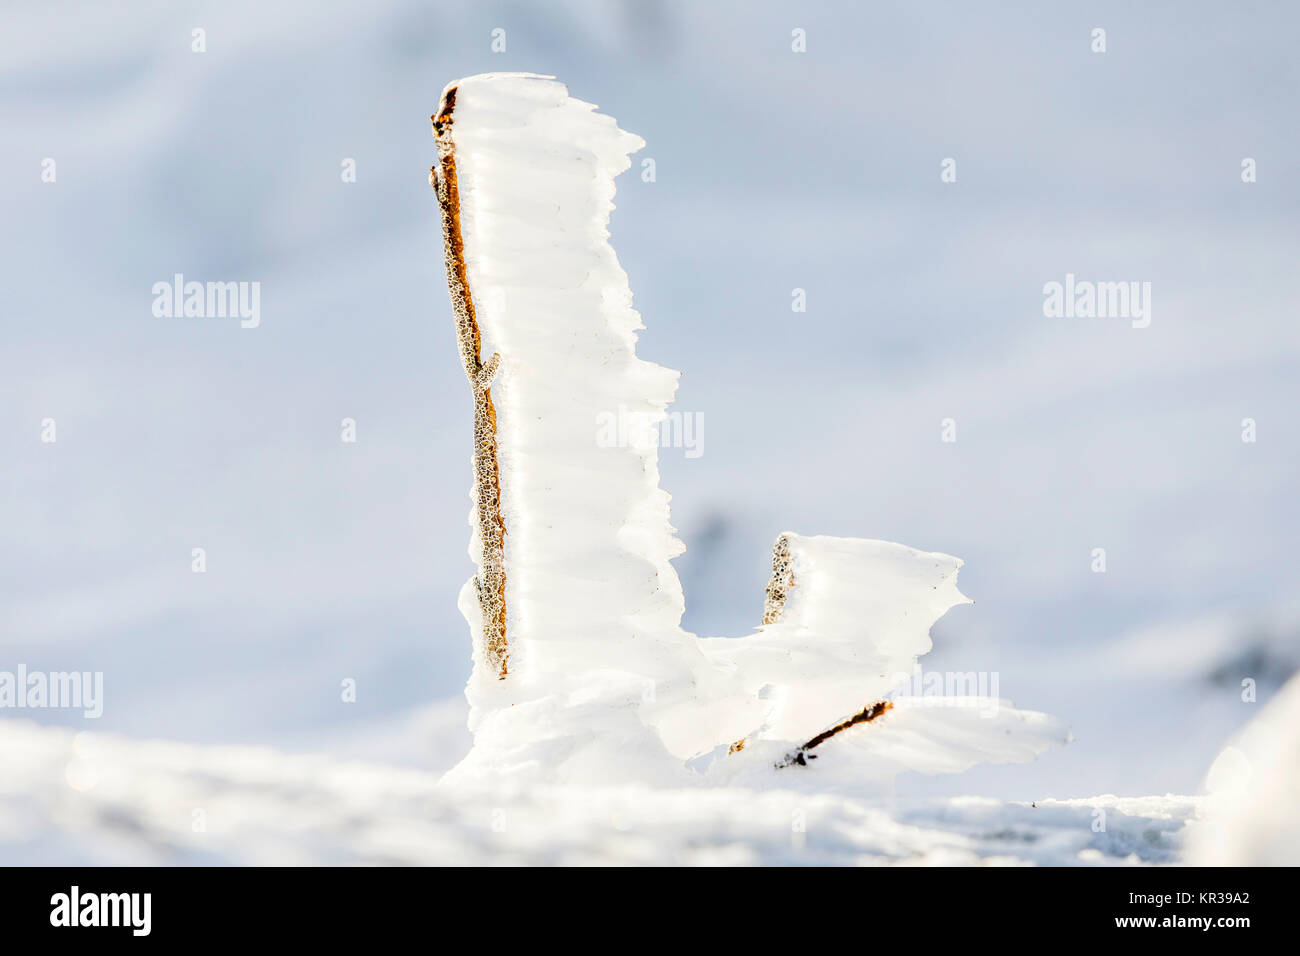 Dettaglio della neve e del ghiaccio a piani congelati in inverno il paesaggio di montagna Foto Stock